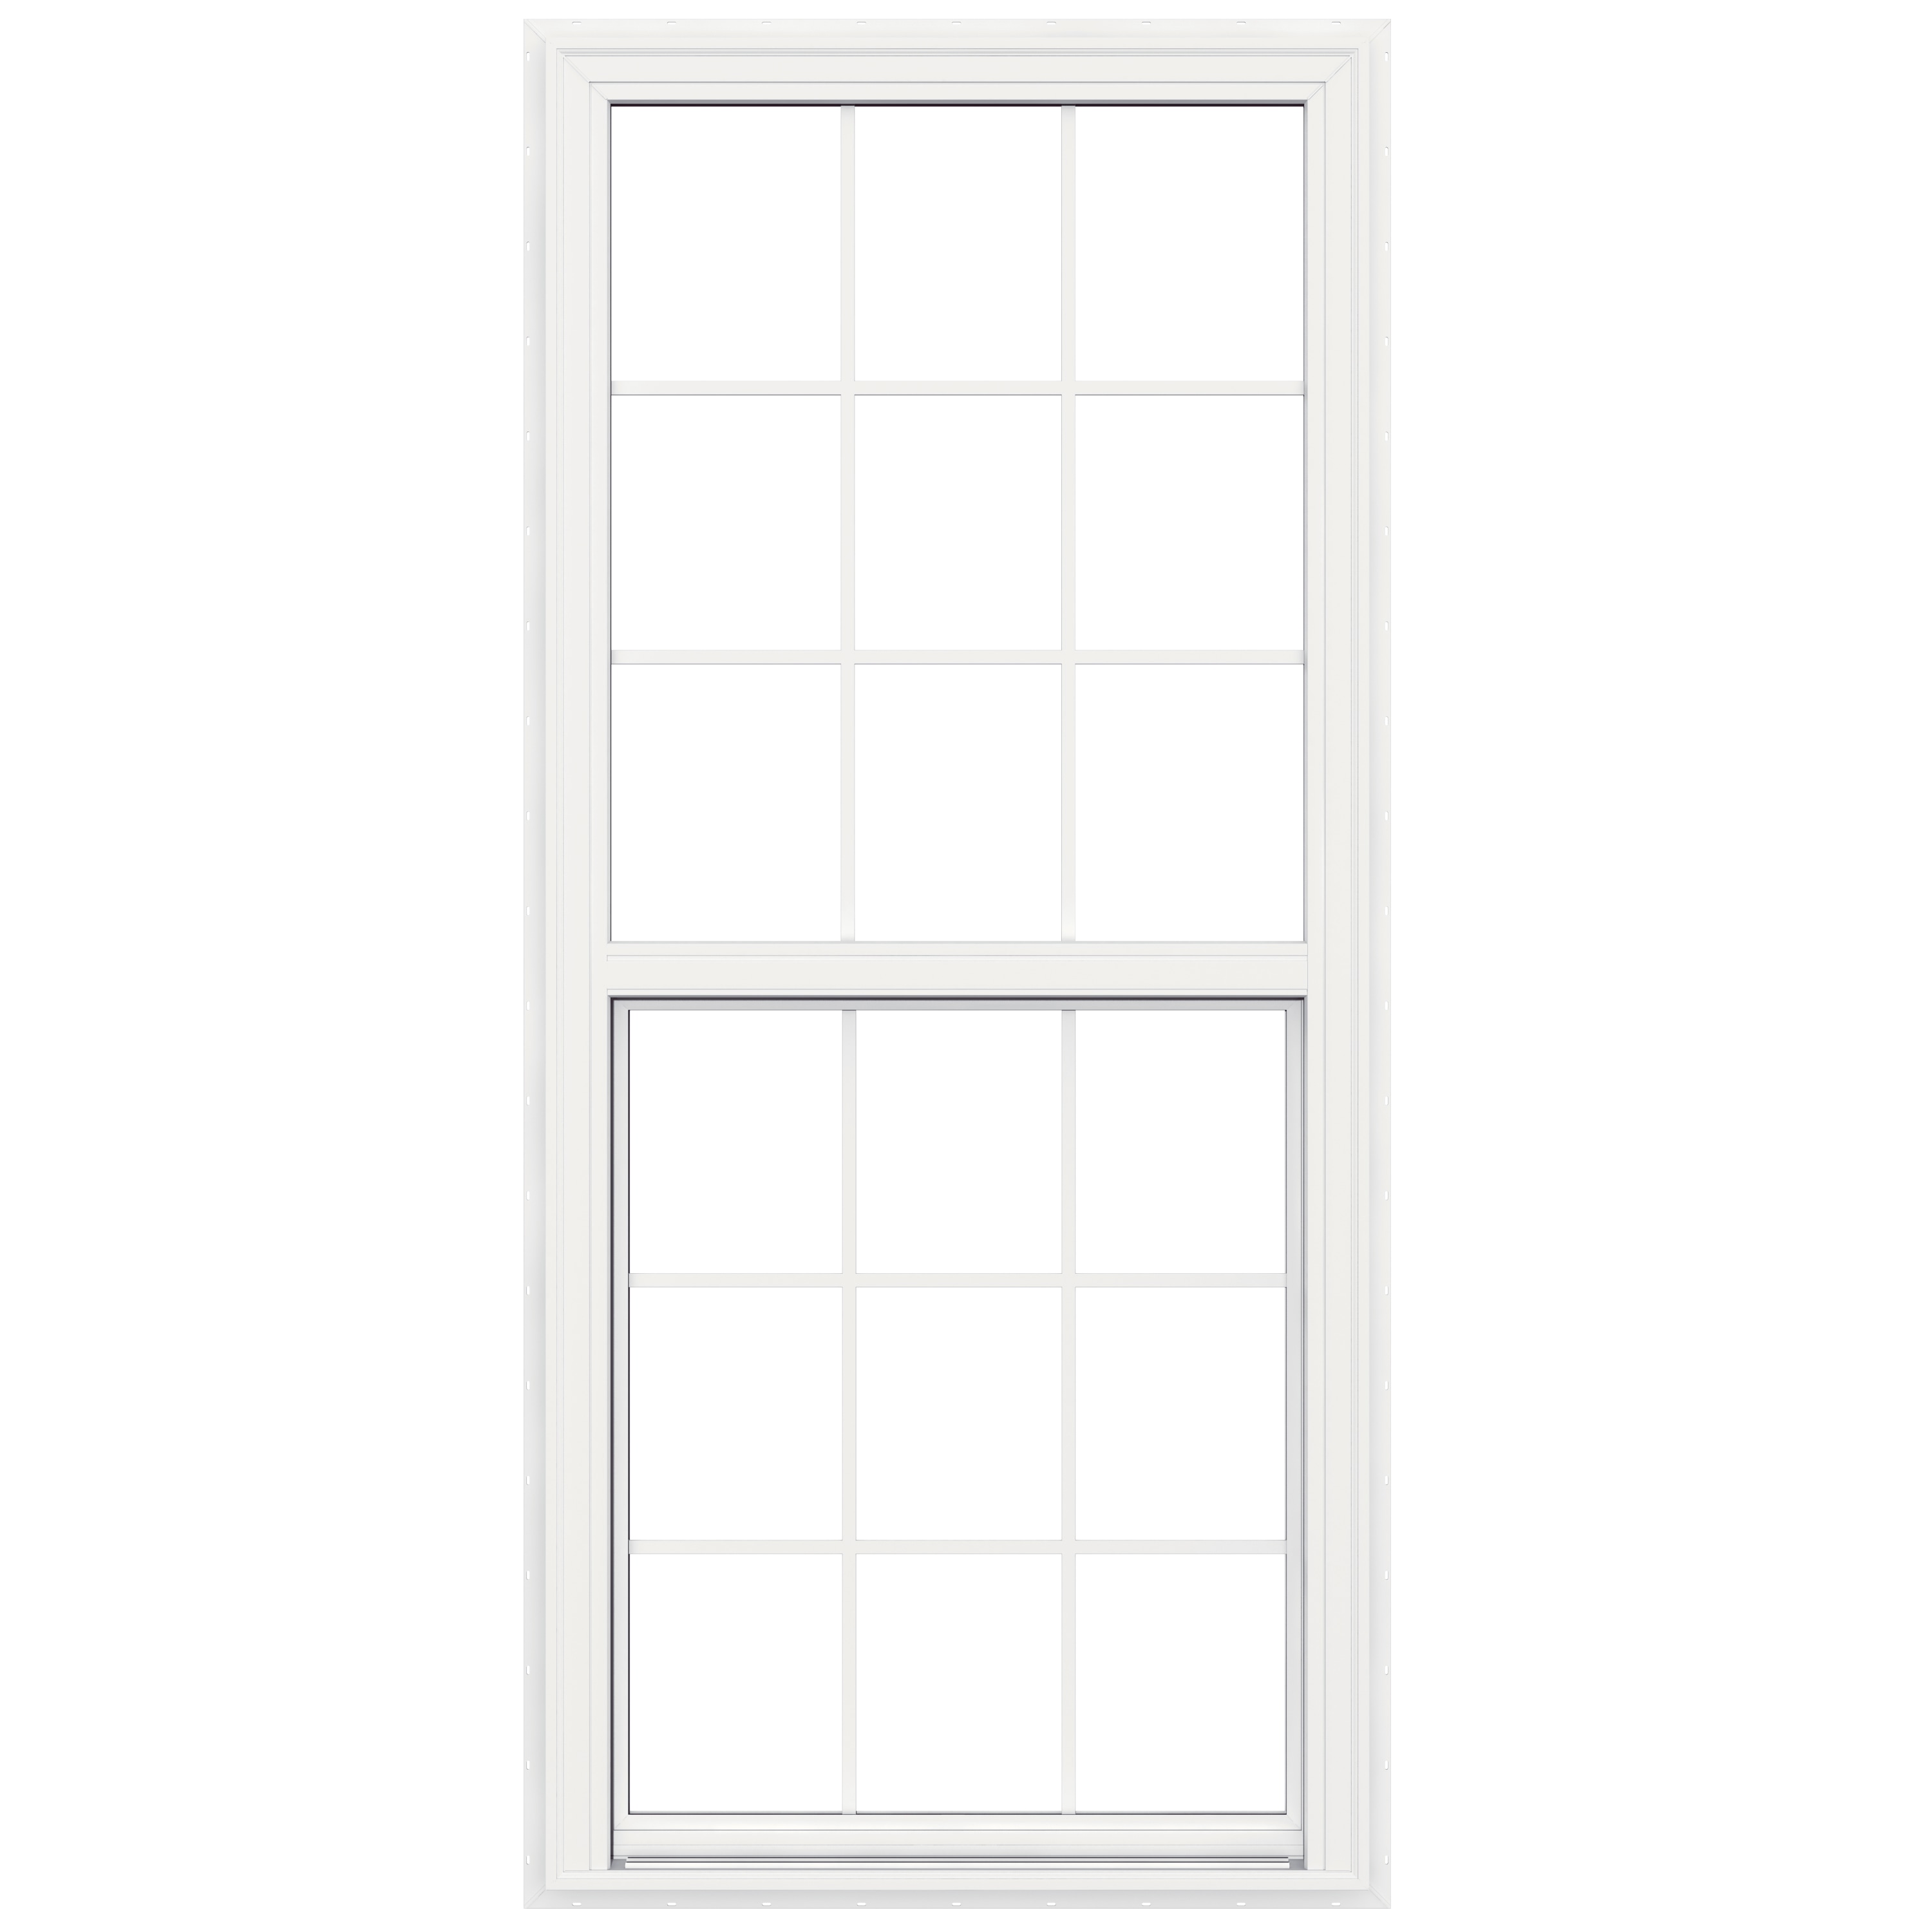 Square D Model 6 3” Blank Door 